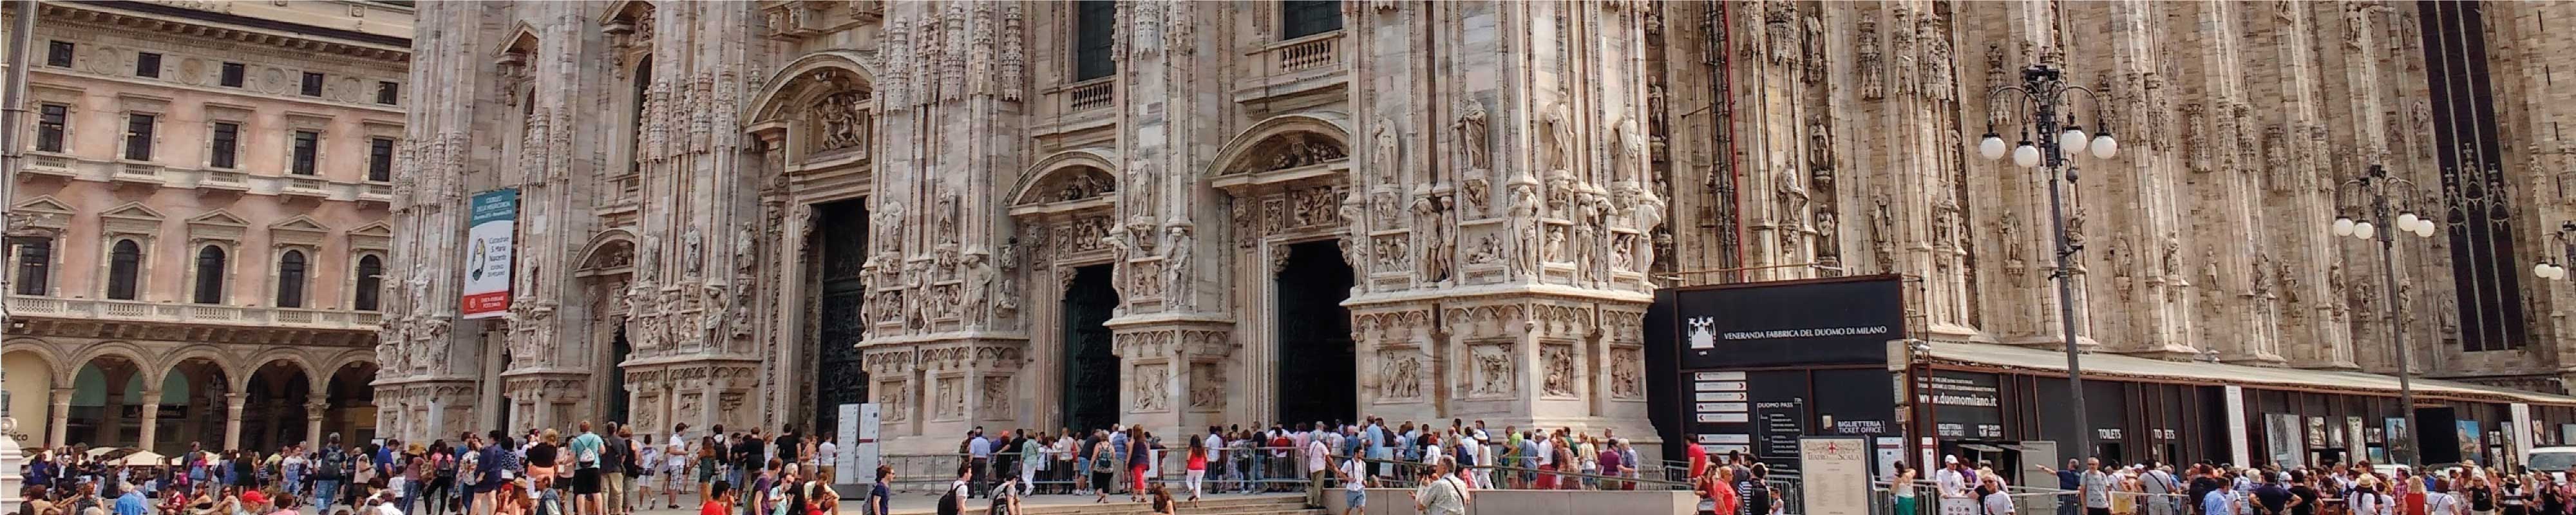 Depósito de Bagagem | Catedral de Milan em Milão - Nannybag